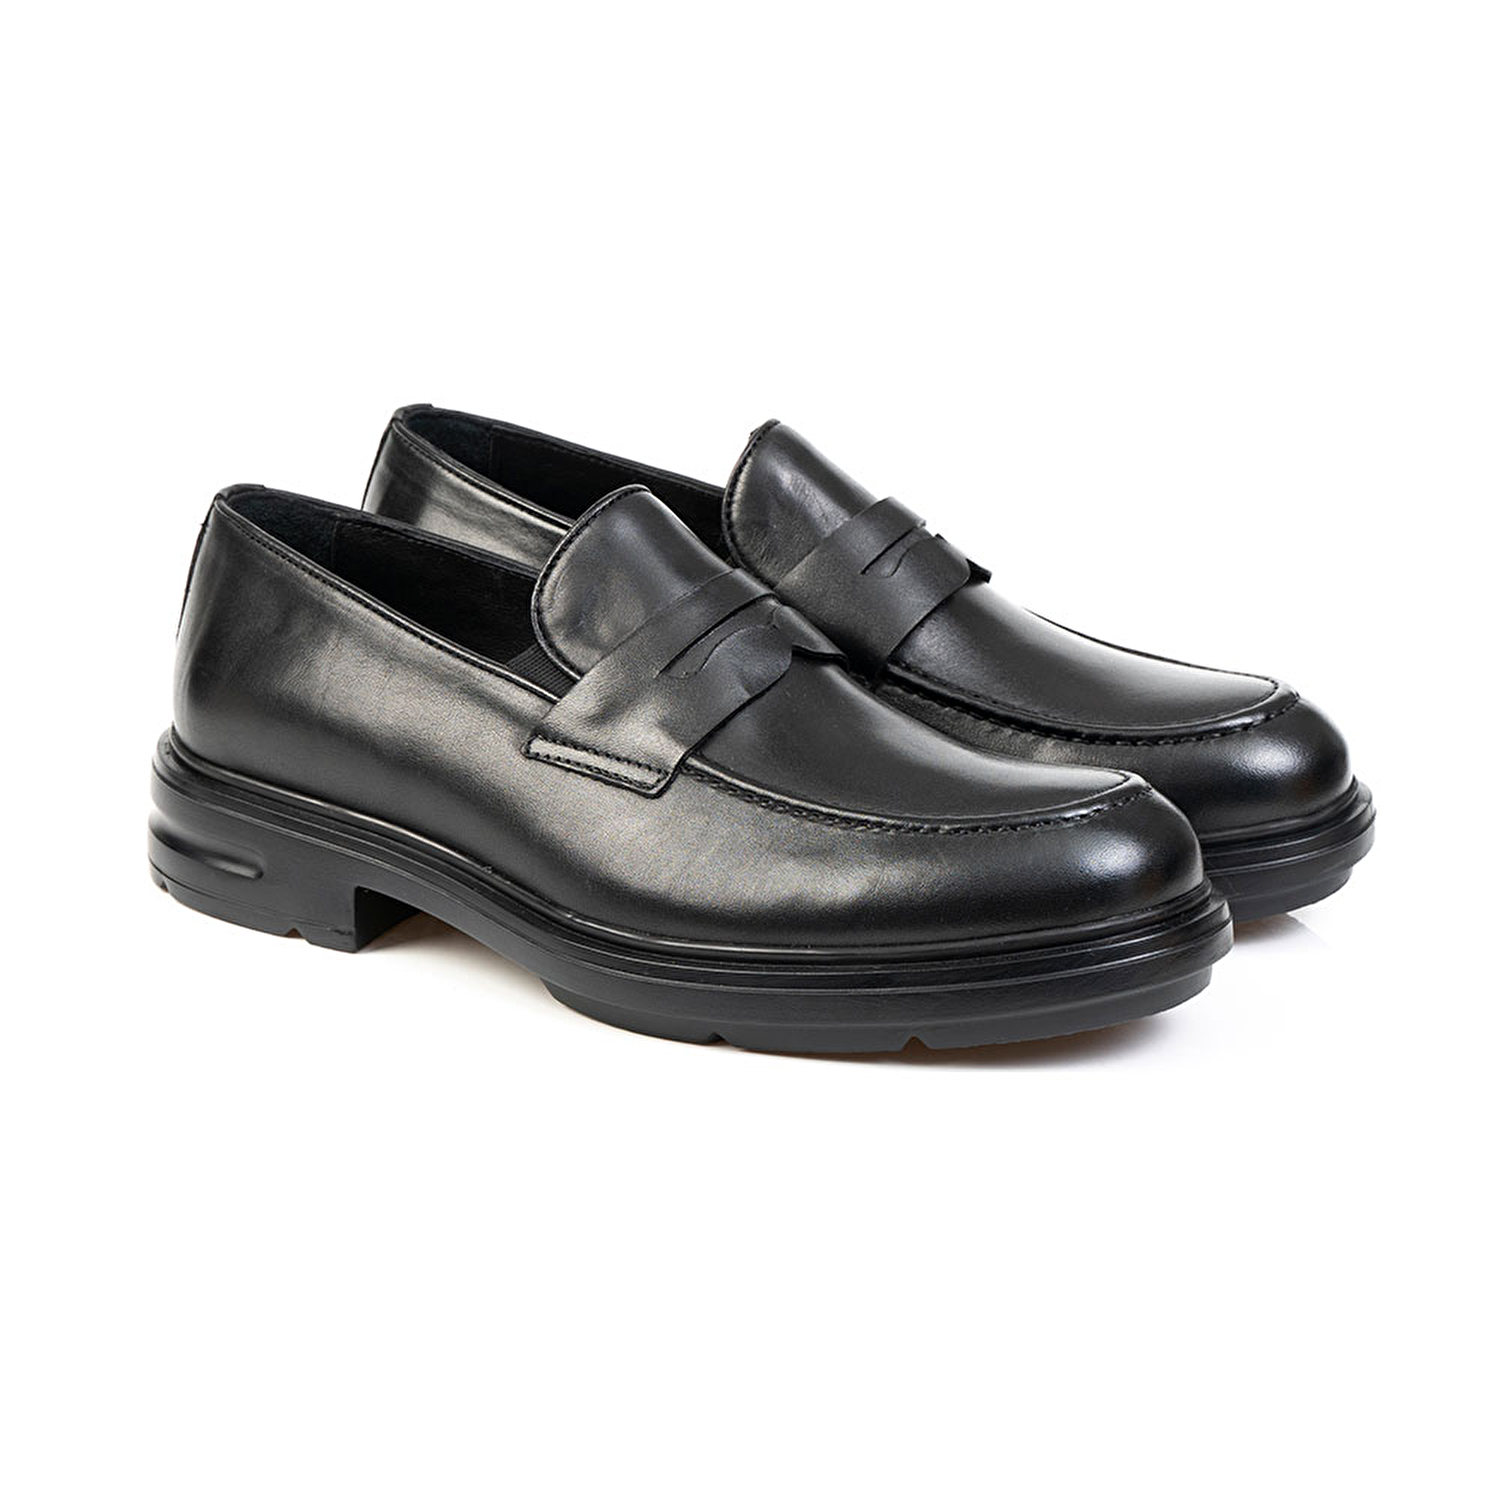 Klasik Erkek Ayakkabı Siyah Deri 67797-2